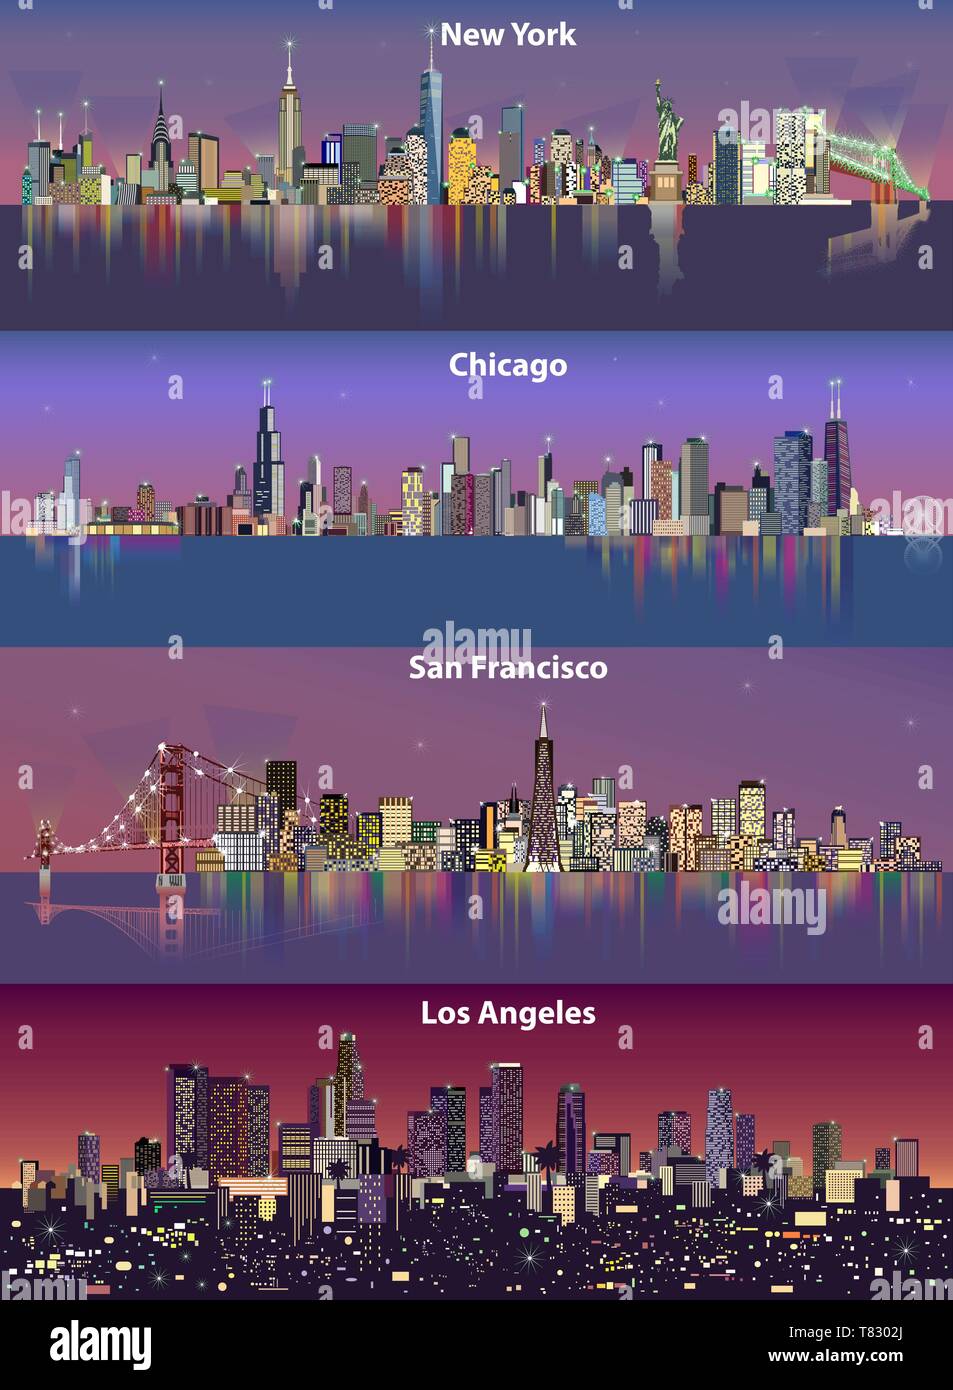 Abstract vector Illustrationen von United States Skylines (New York, Chicago, San Francisco und Los Angeles) in der Nacht mit Karte Stock Vektor